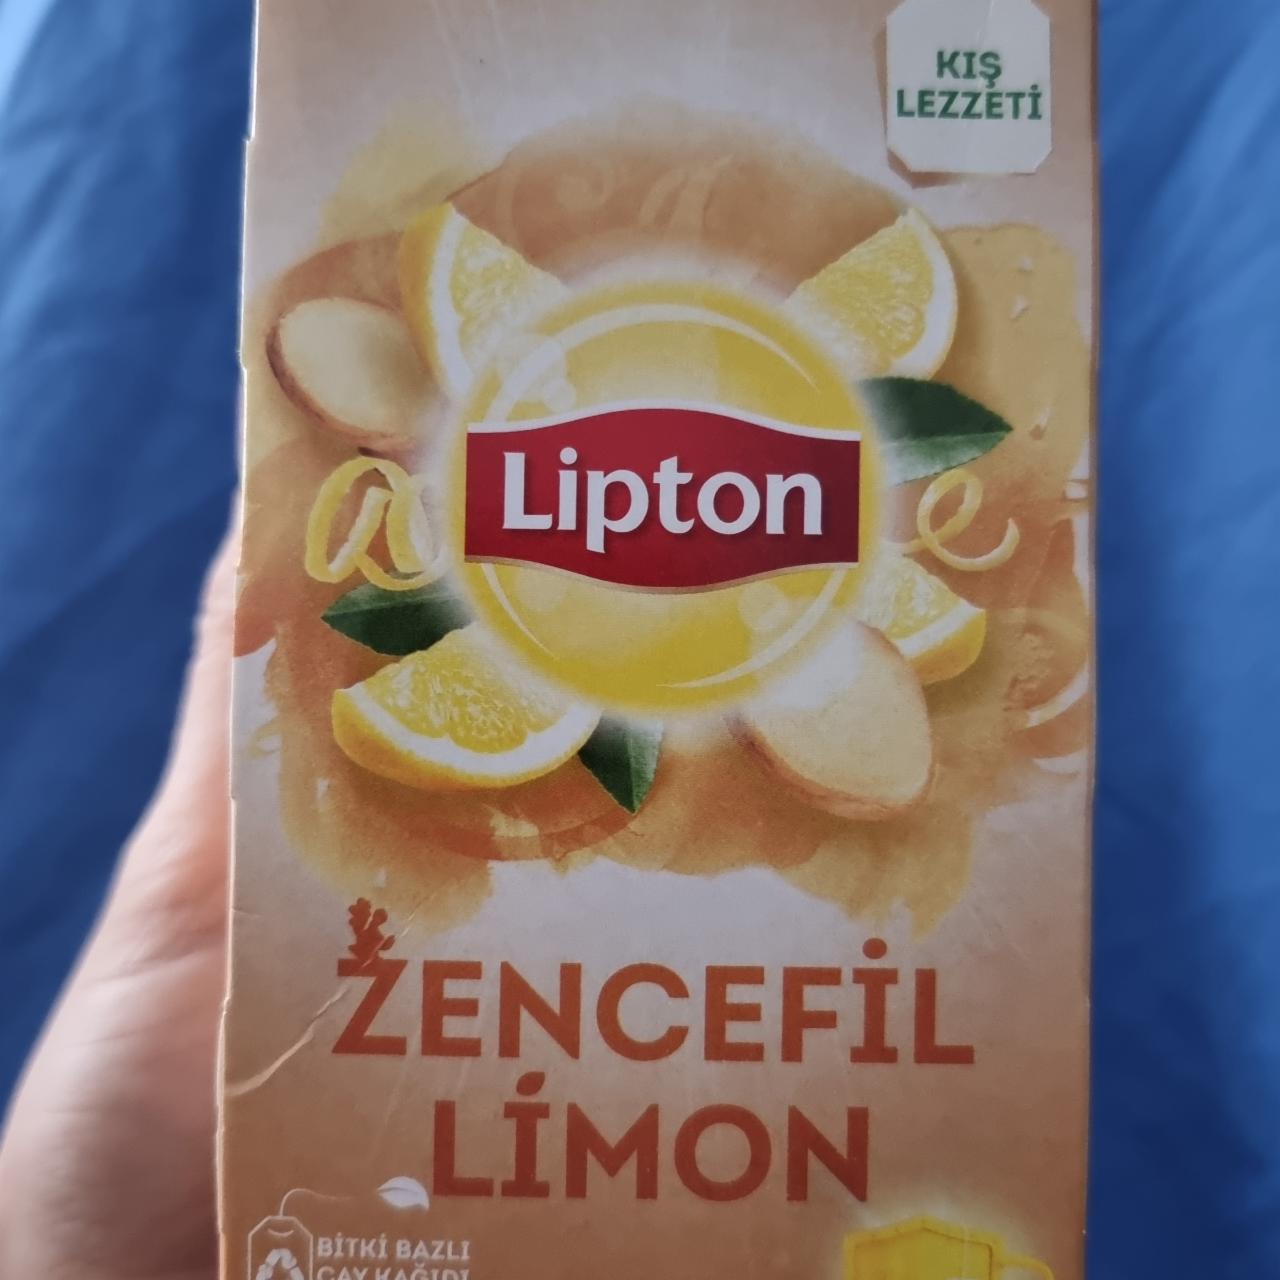 Фото - Чай имбирь и лимон Zencefil Limon Lipton